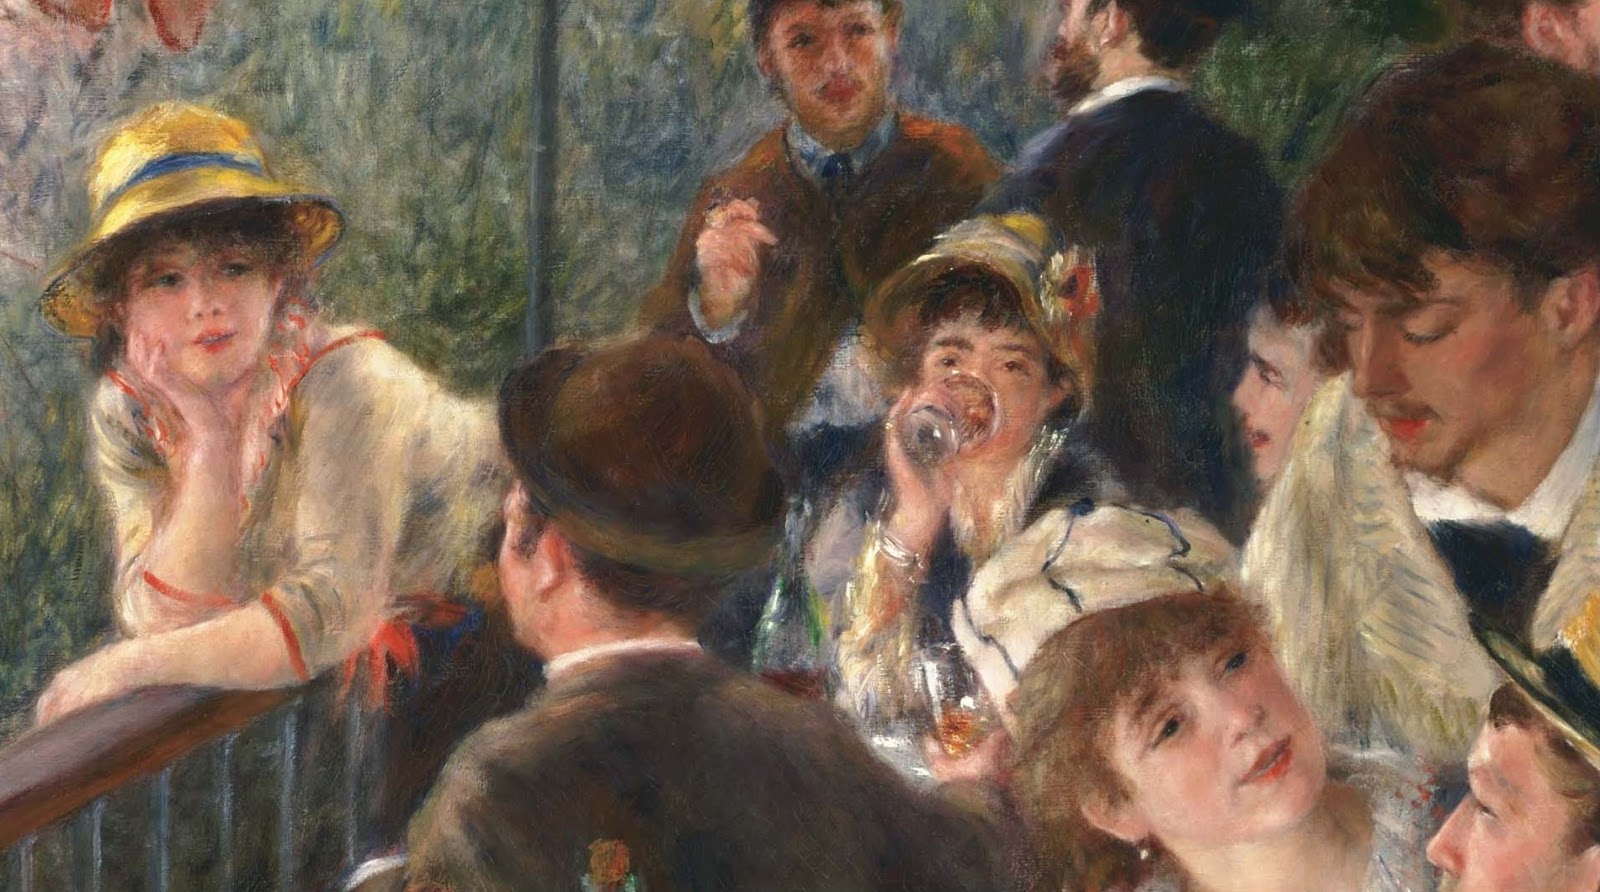 Pierre+Auguste+Renoir-1841-1-19 (569).JPG